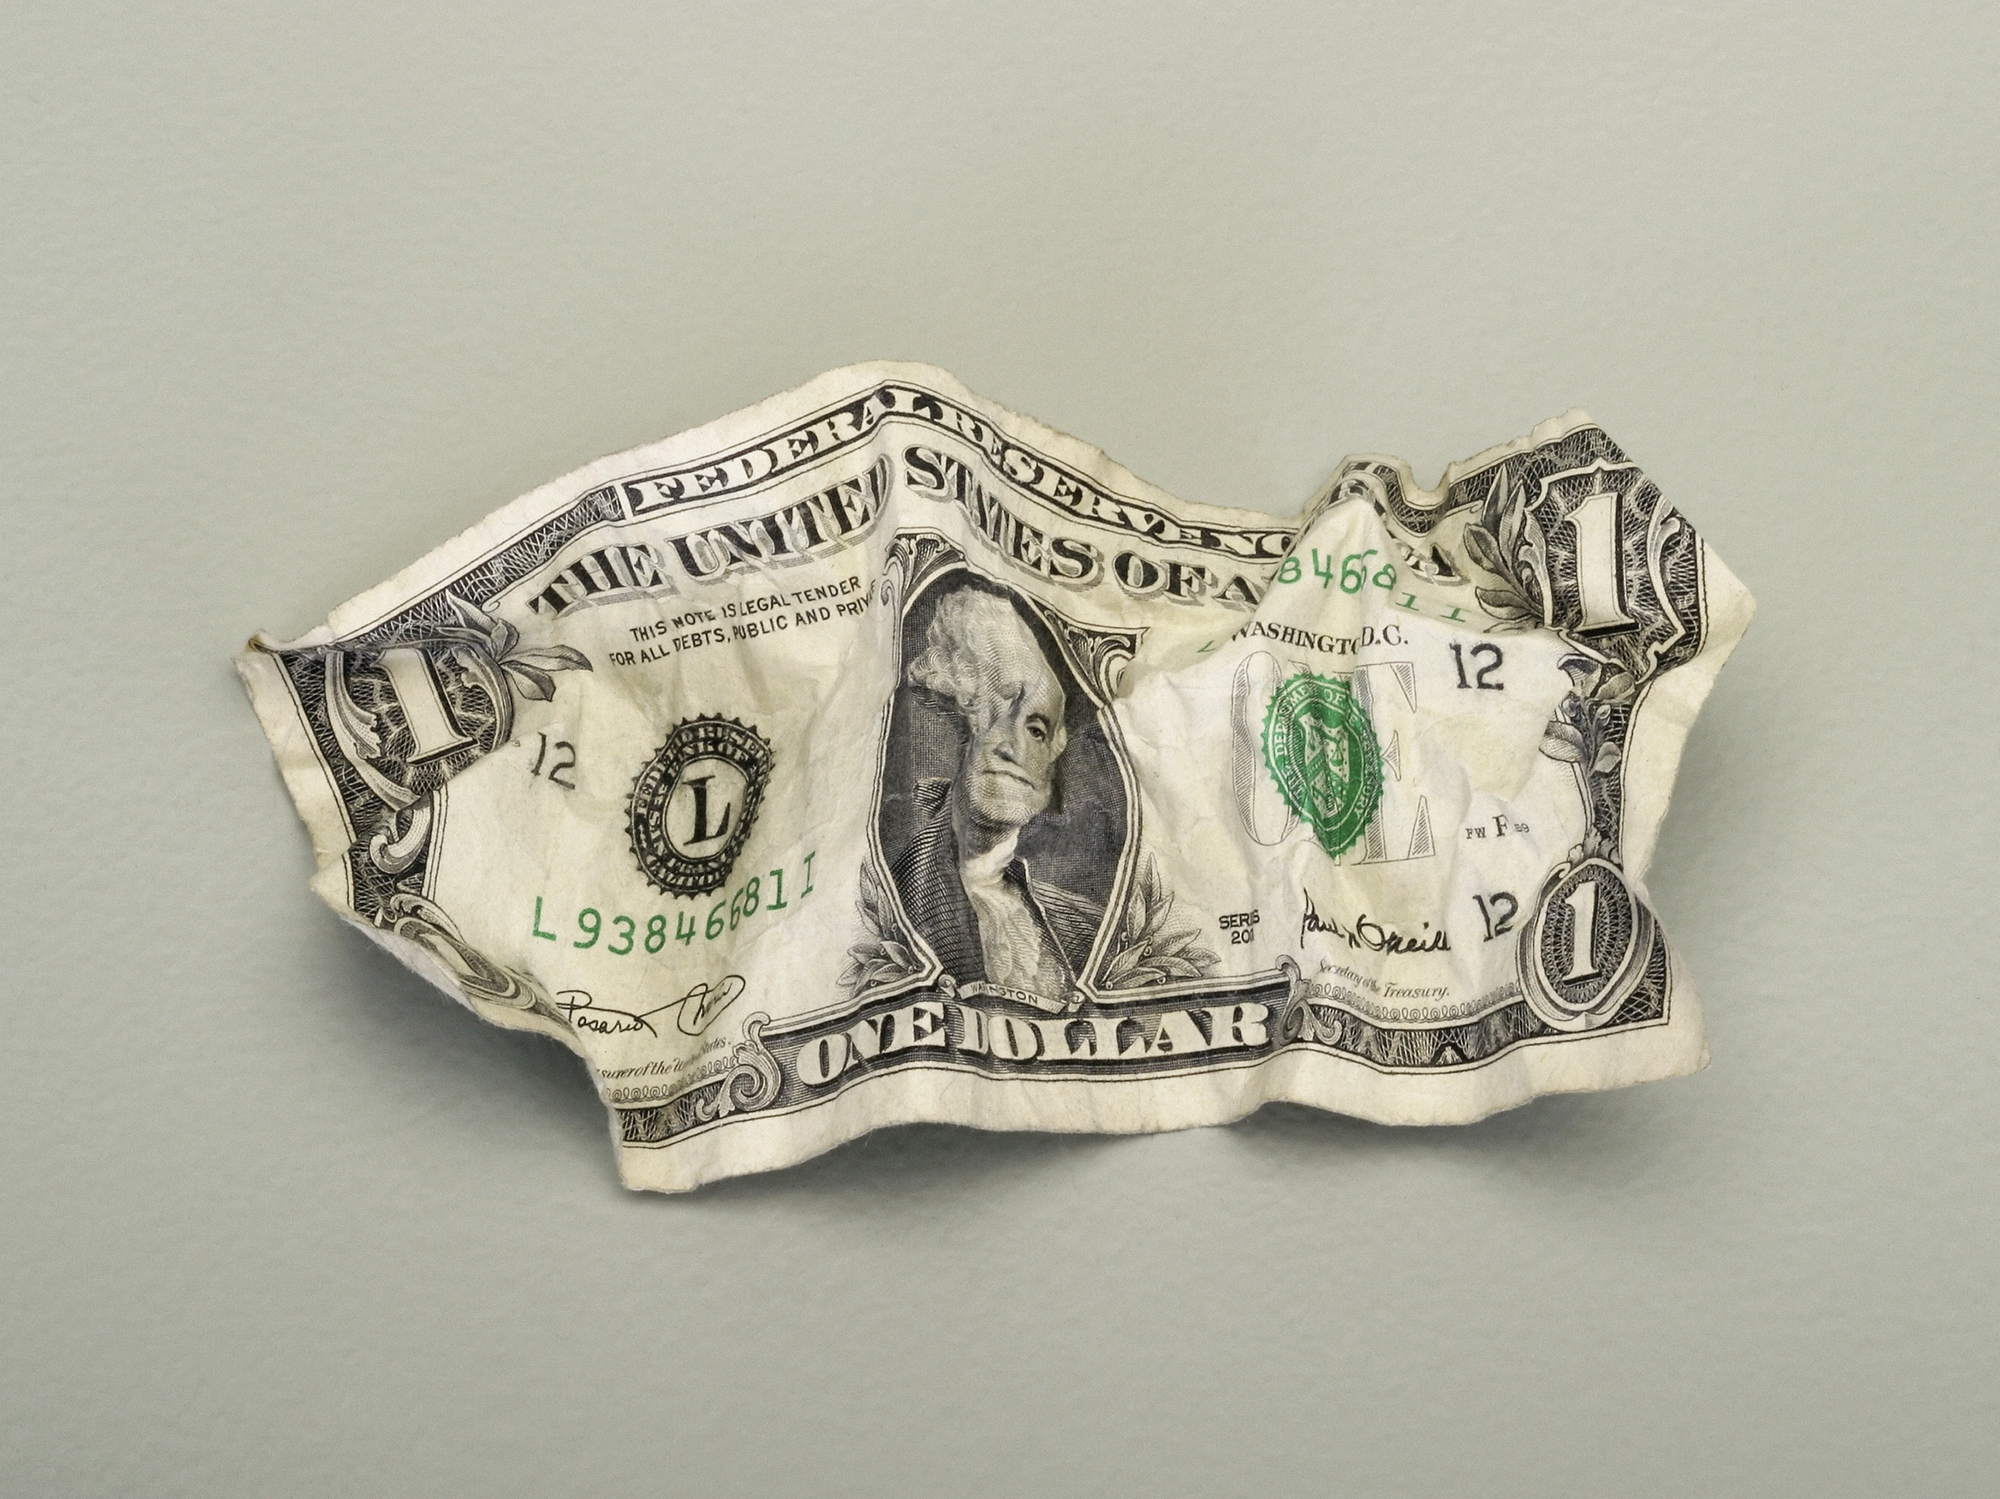 A crumpled dollar bill